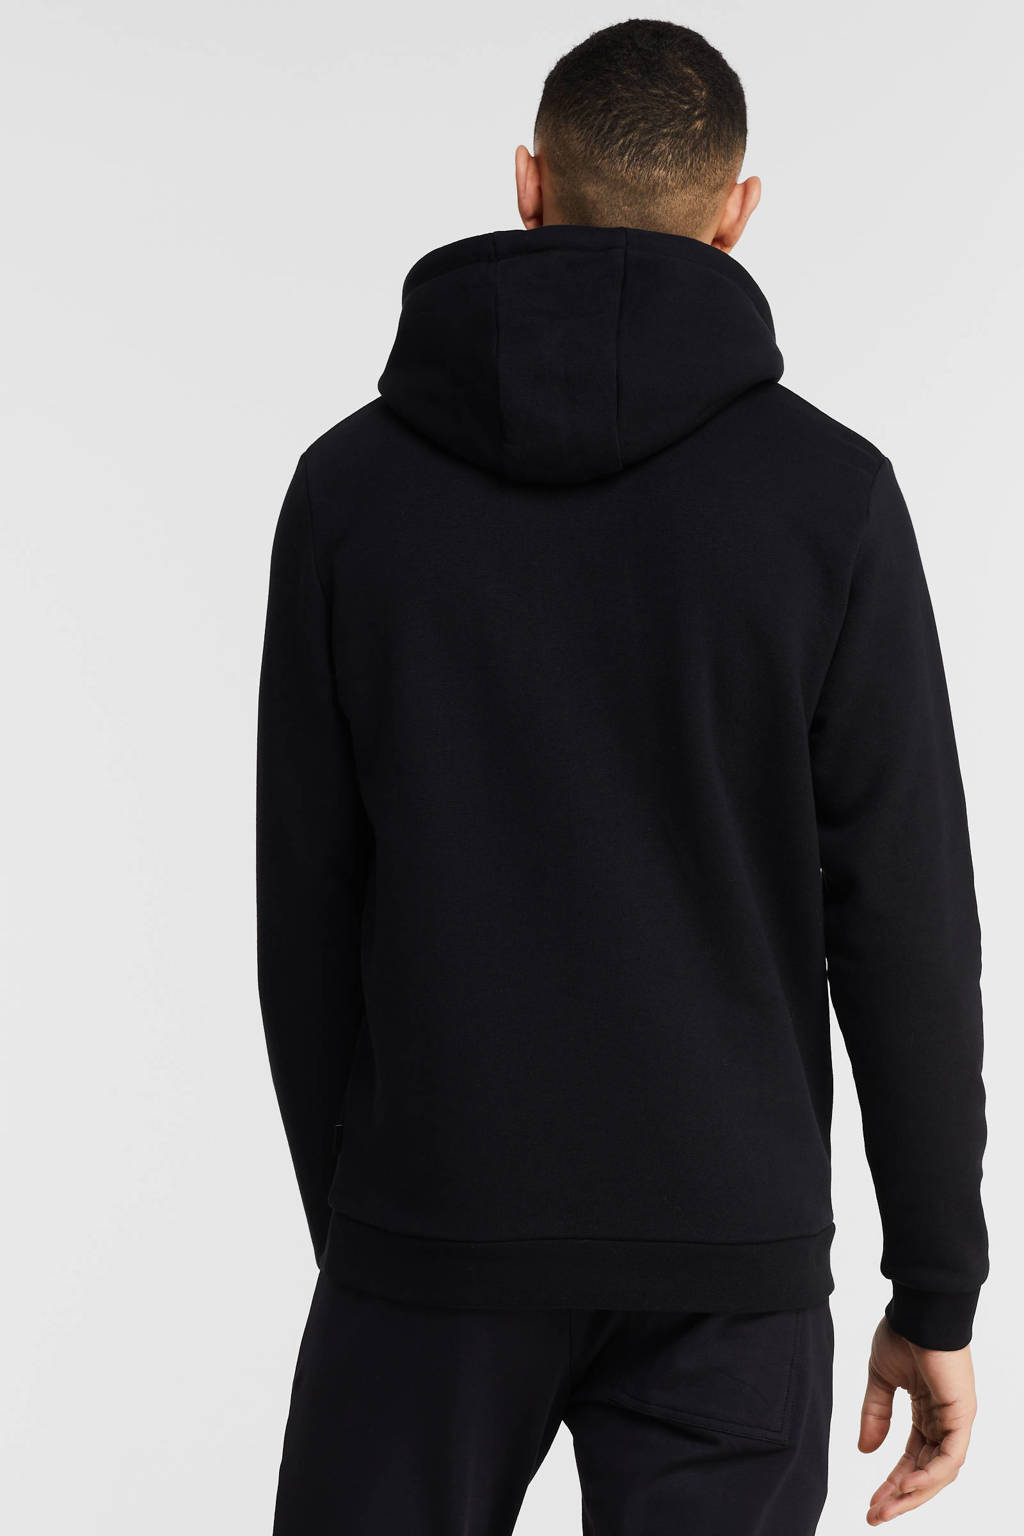 ESPRIT Men Casual hoodie black, Black